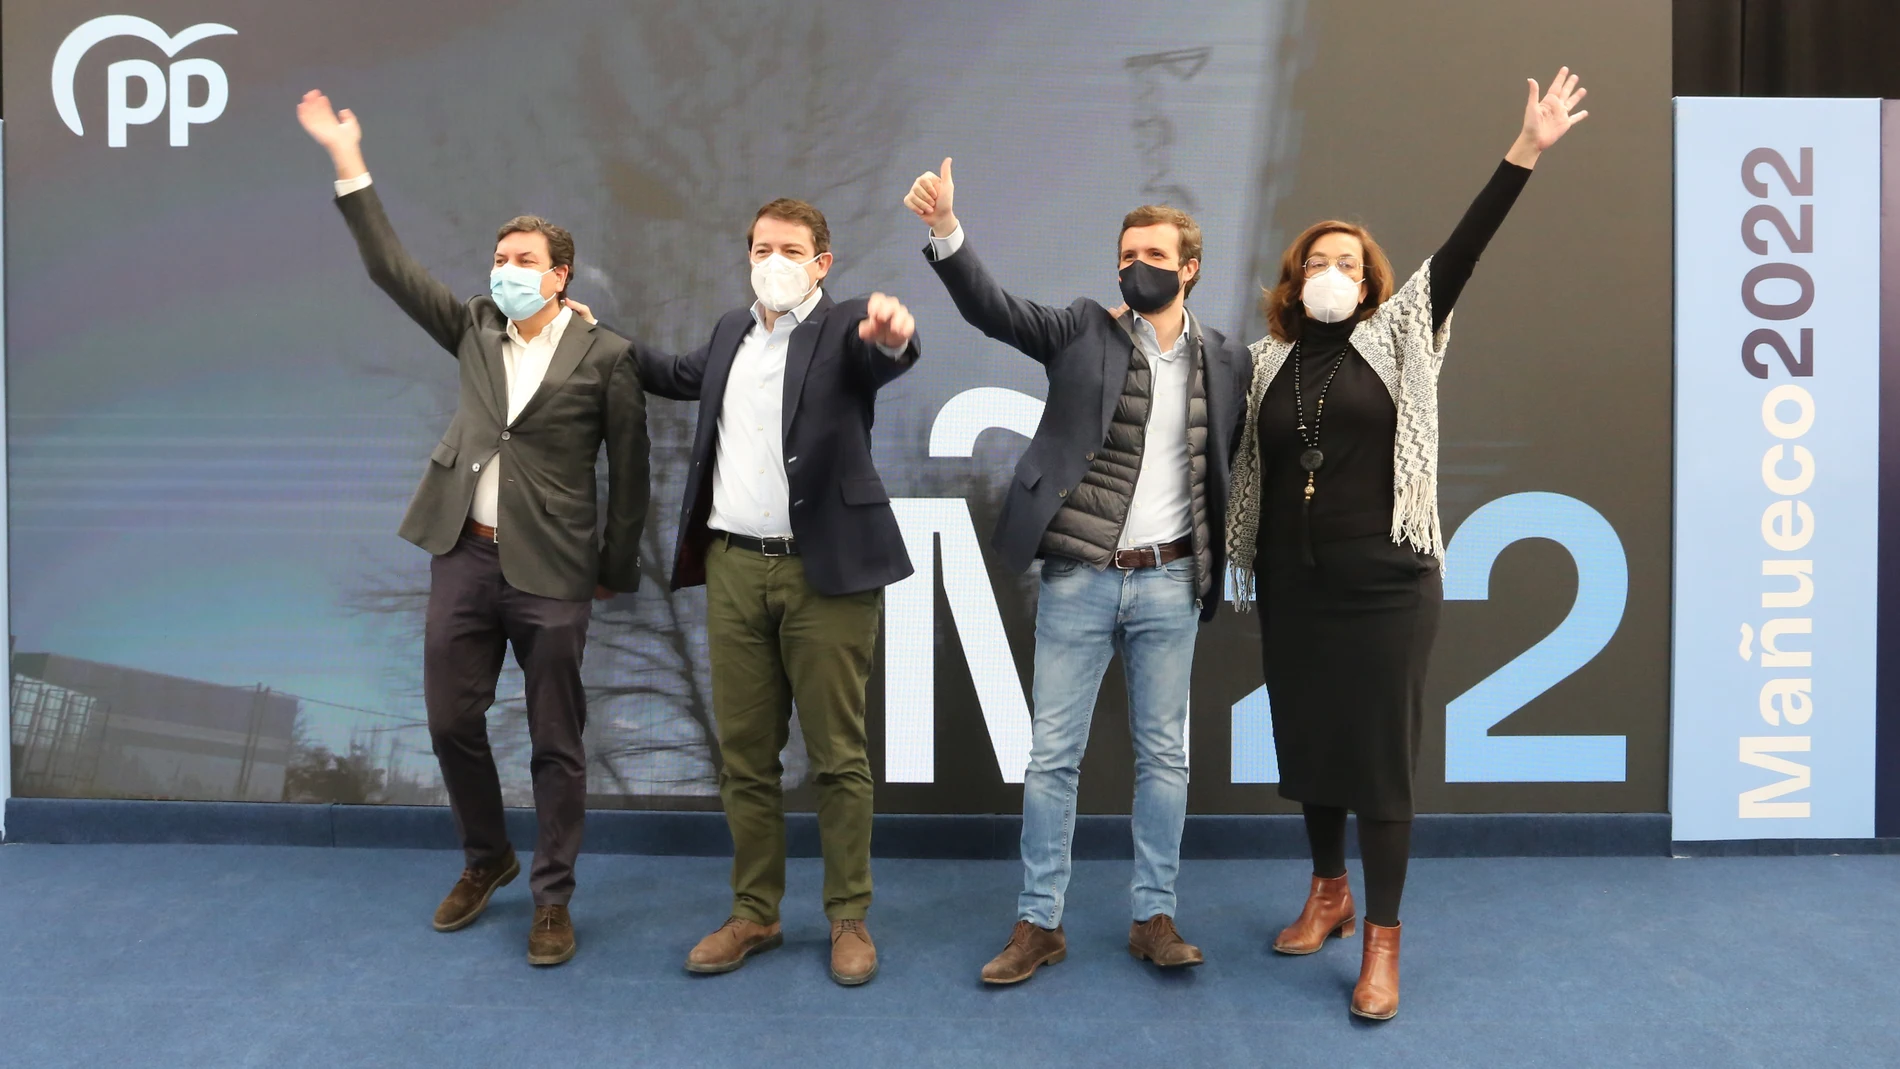 Fernández Mañueco, Pablo Casado, Ángeles Armisén y Carlos Fernández Carriedo, durante el acto celebrado en Palencia esta mañana